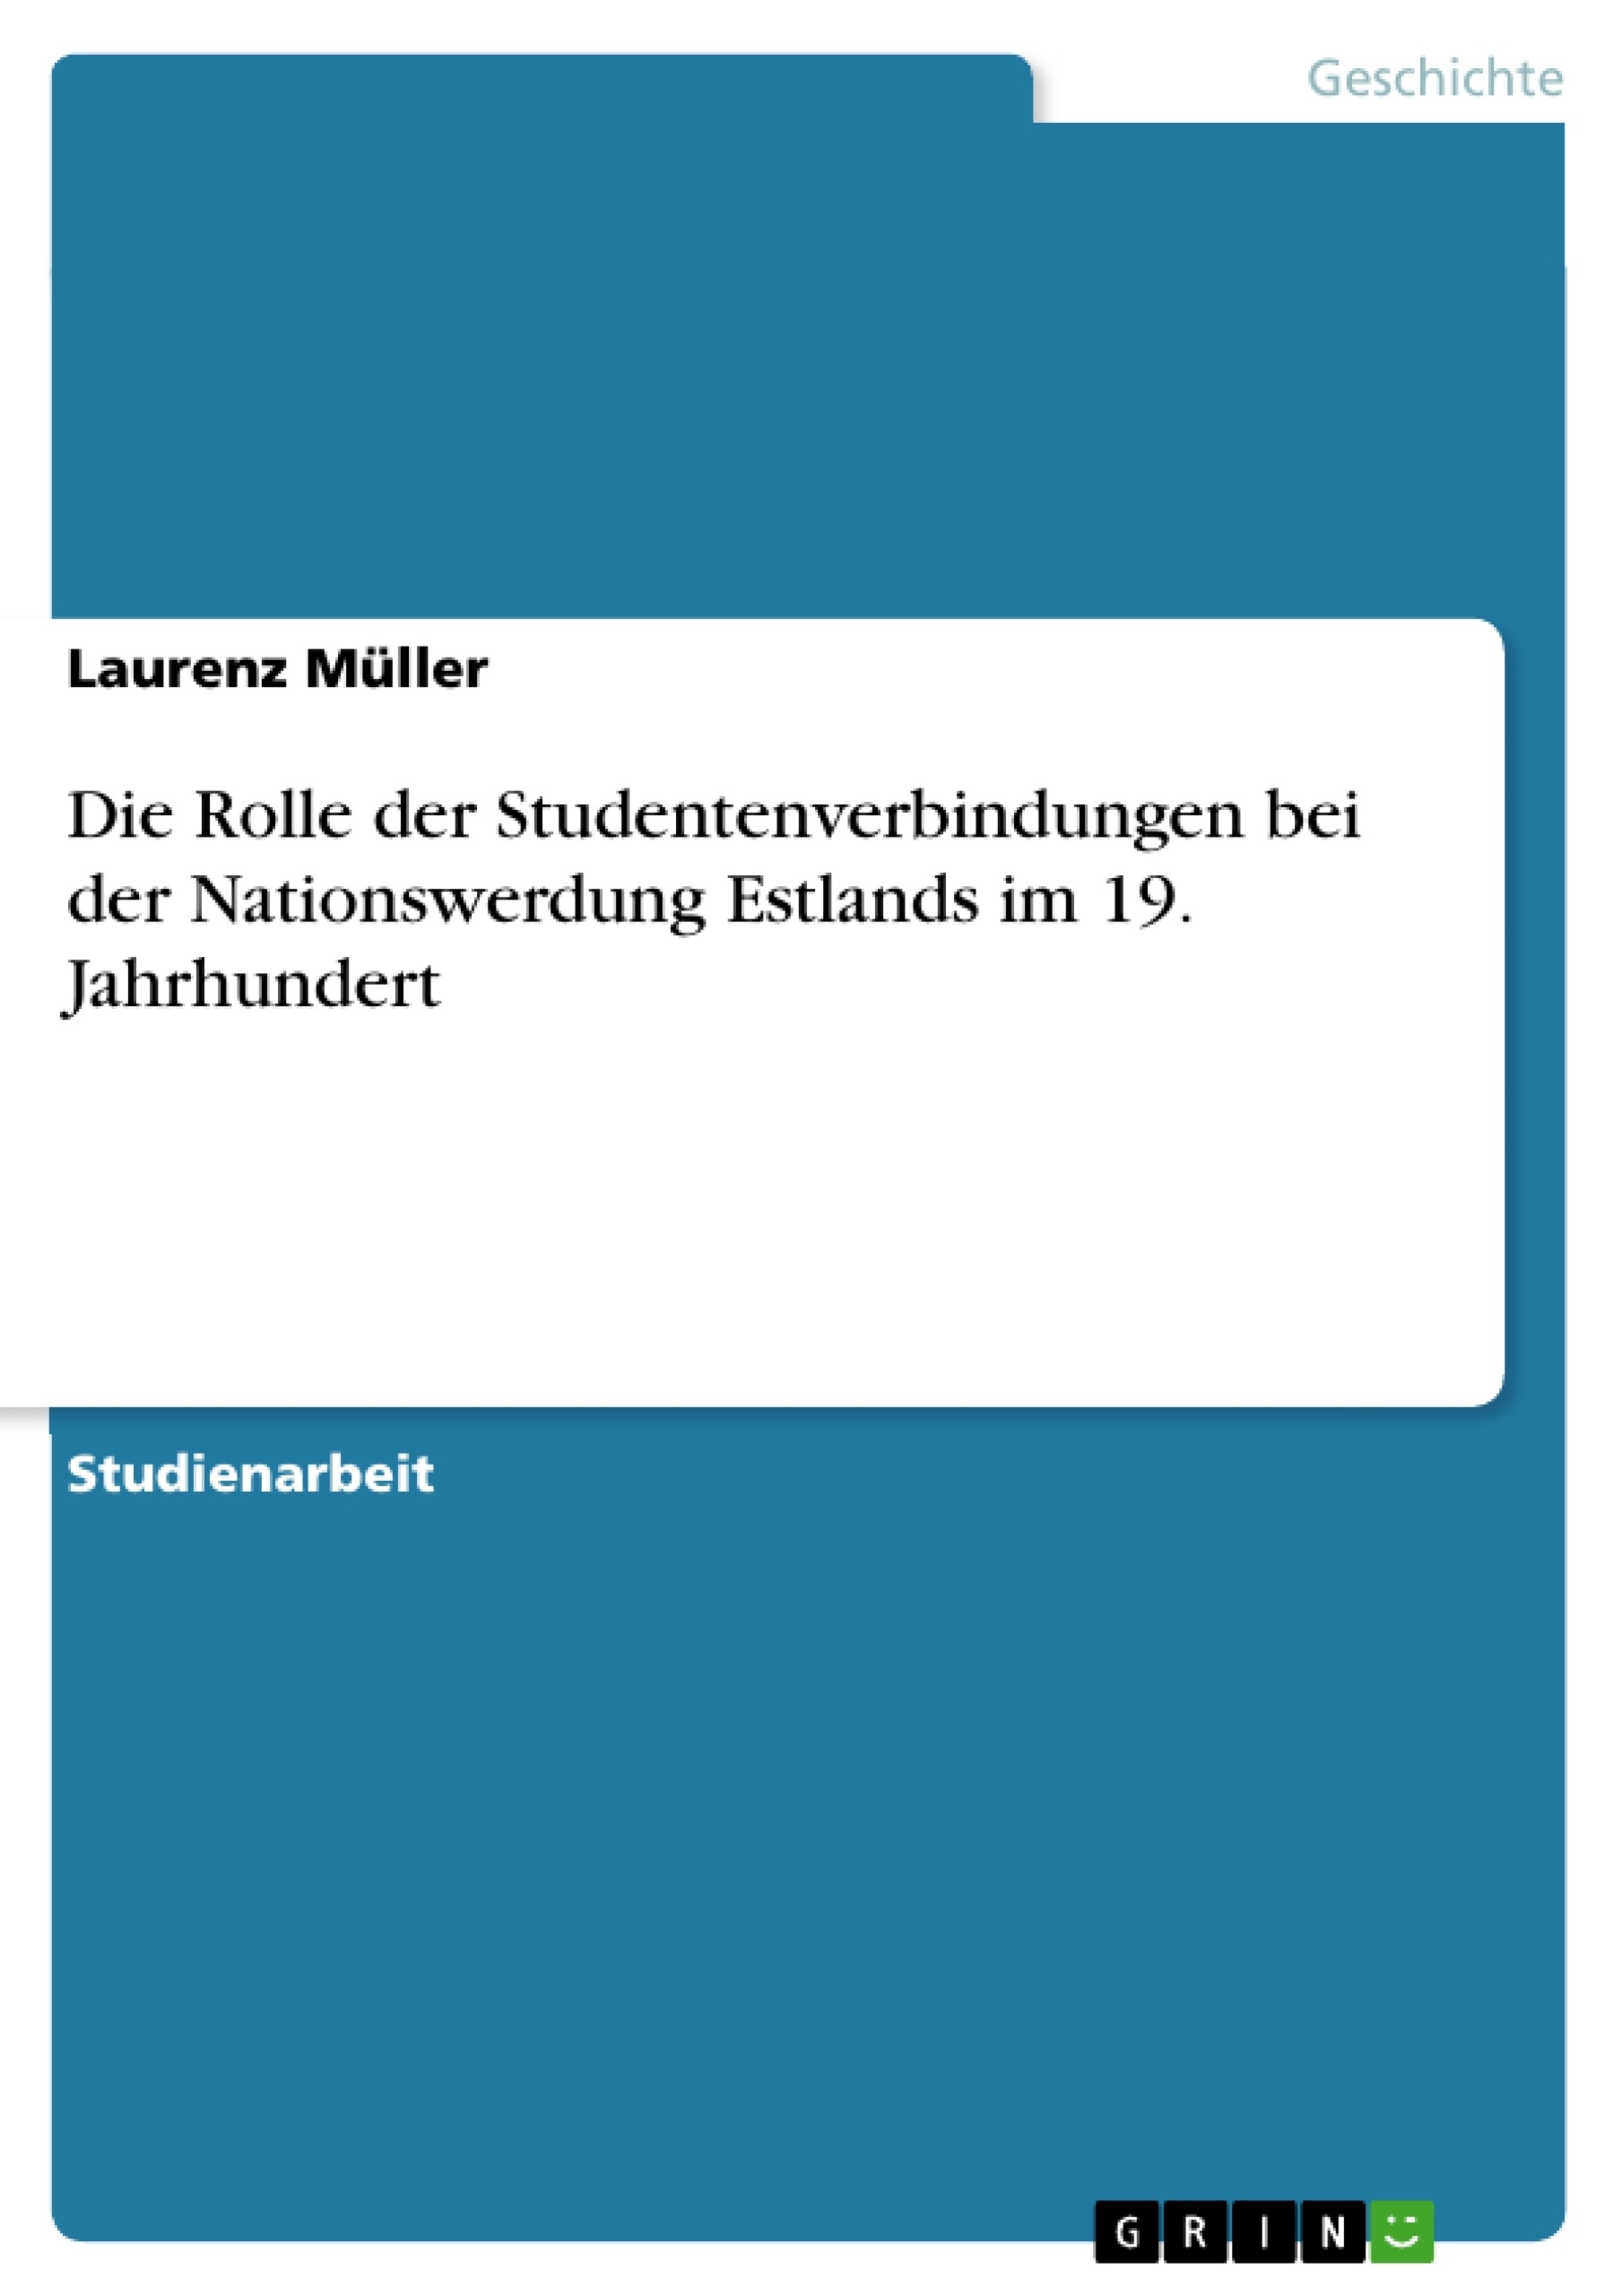 Title: Die Rolle der Studentenverbindungen bei der Nationswerdung Estlands im 19. Jahrhundert